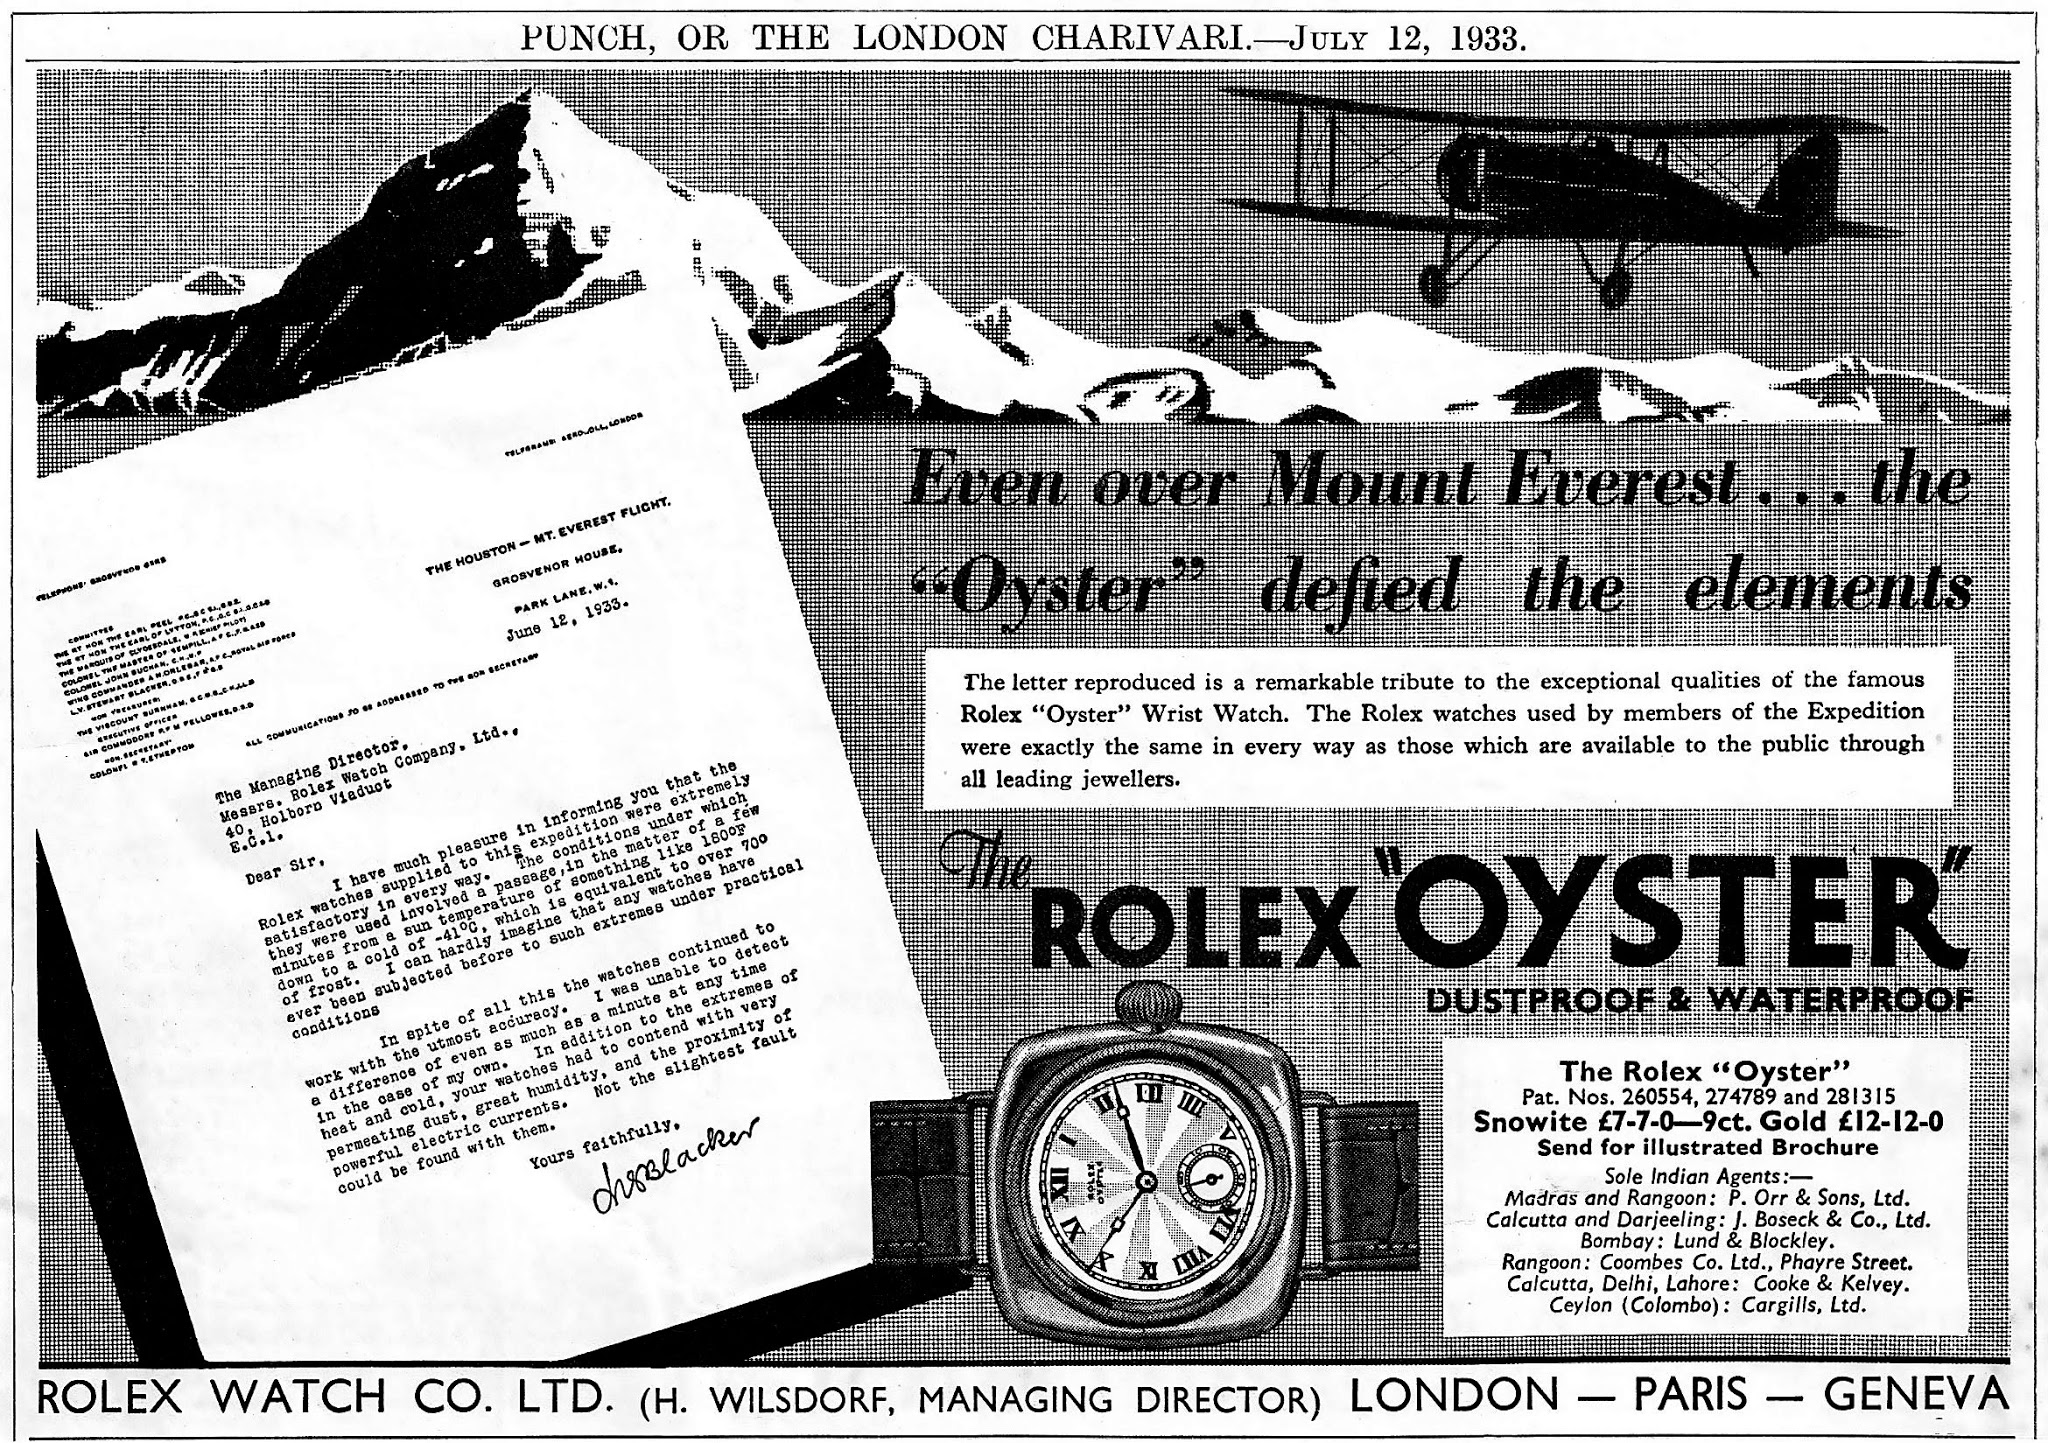 Mount Everest on April 3, 1933